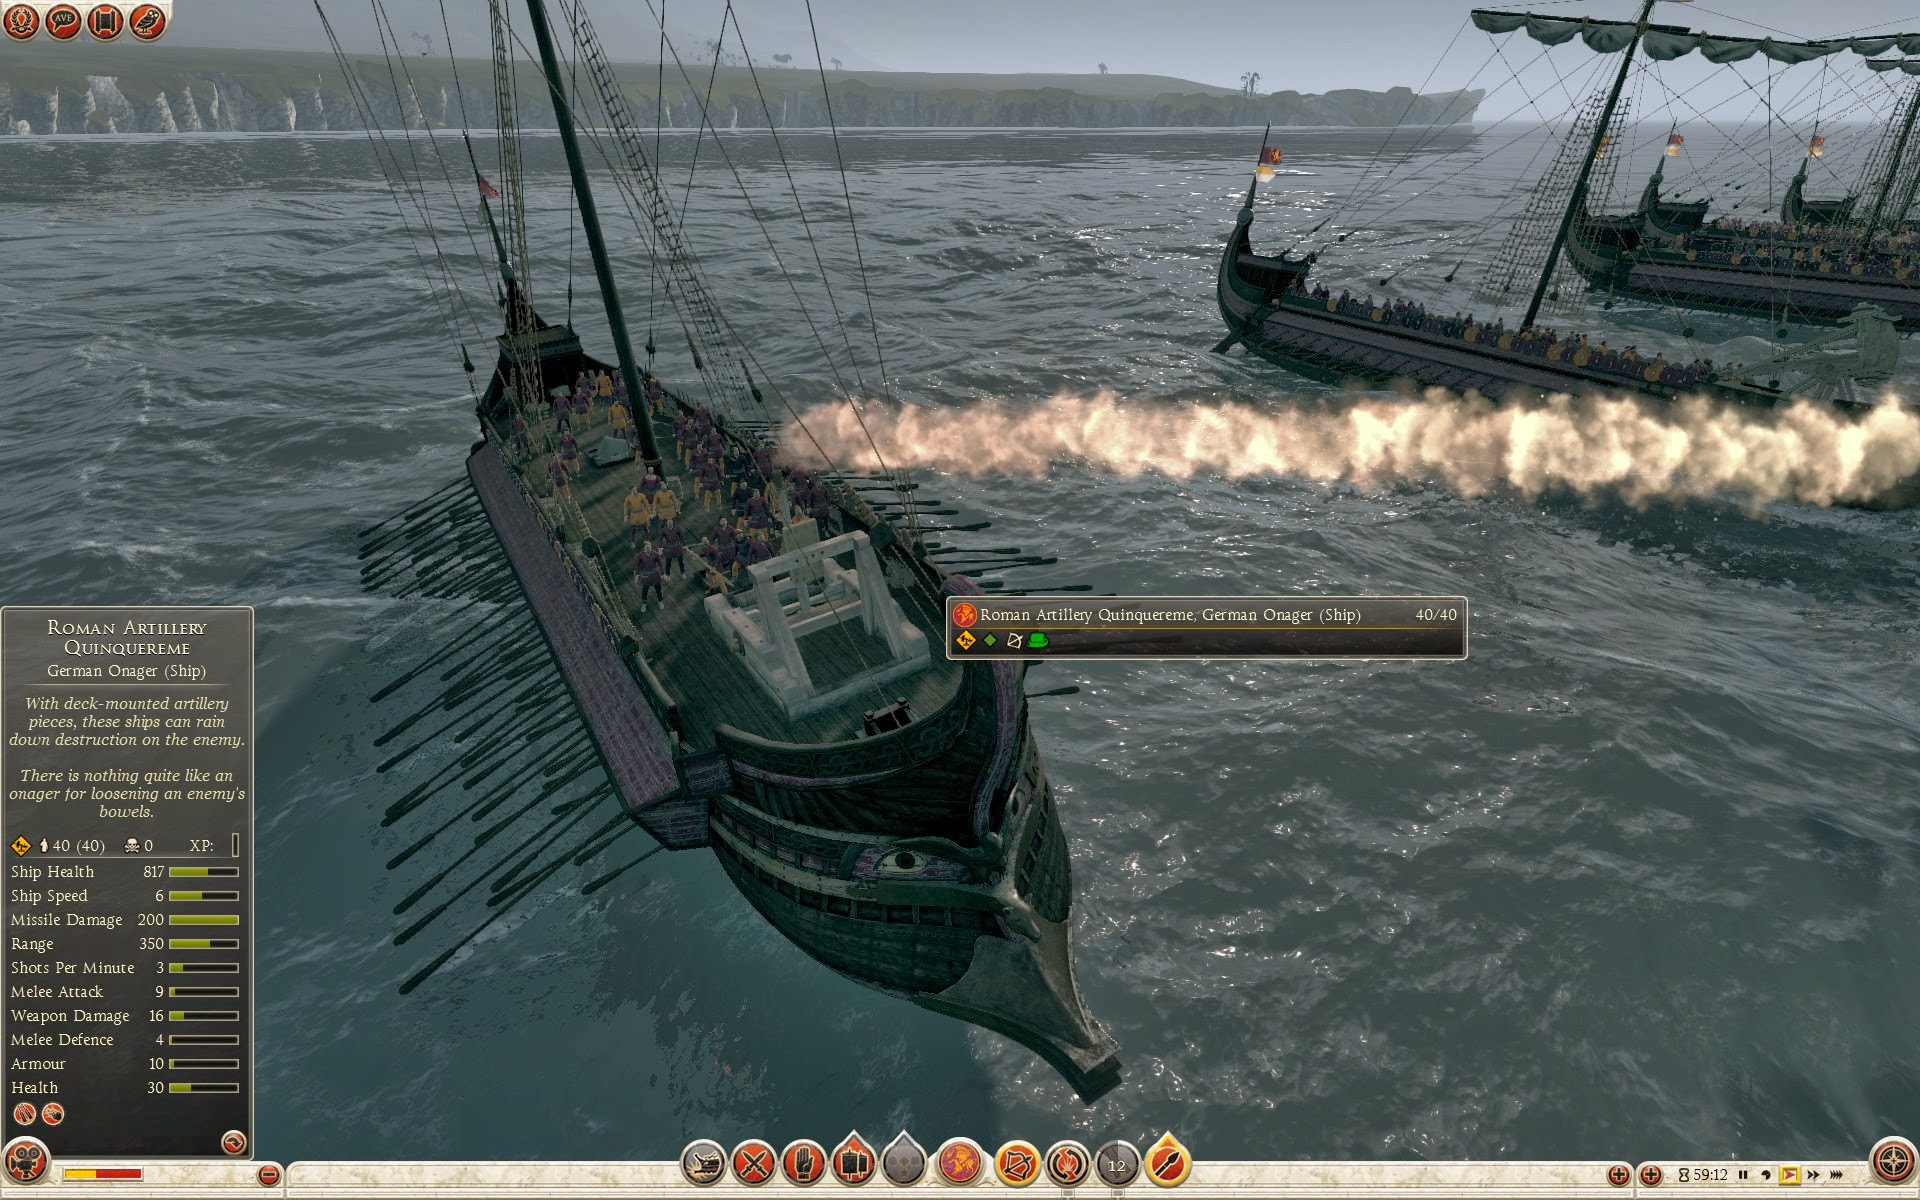 Quinquerreme romano de artillería - Onagro germánico (barco)